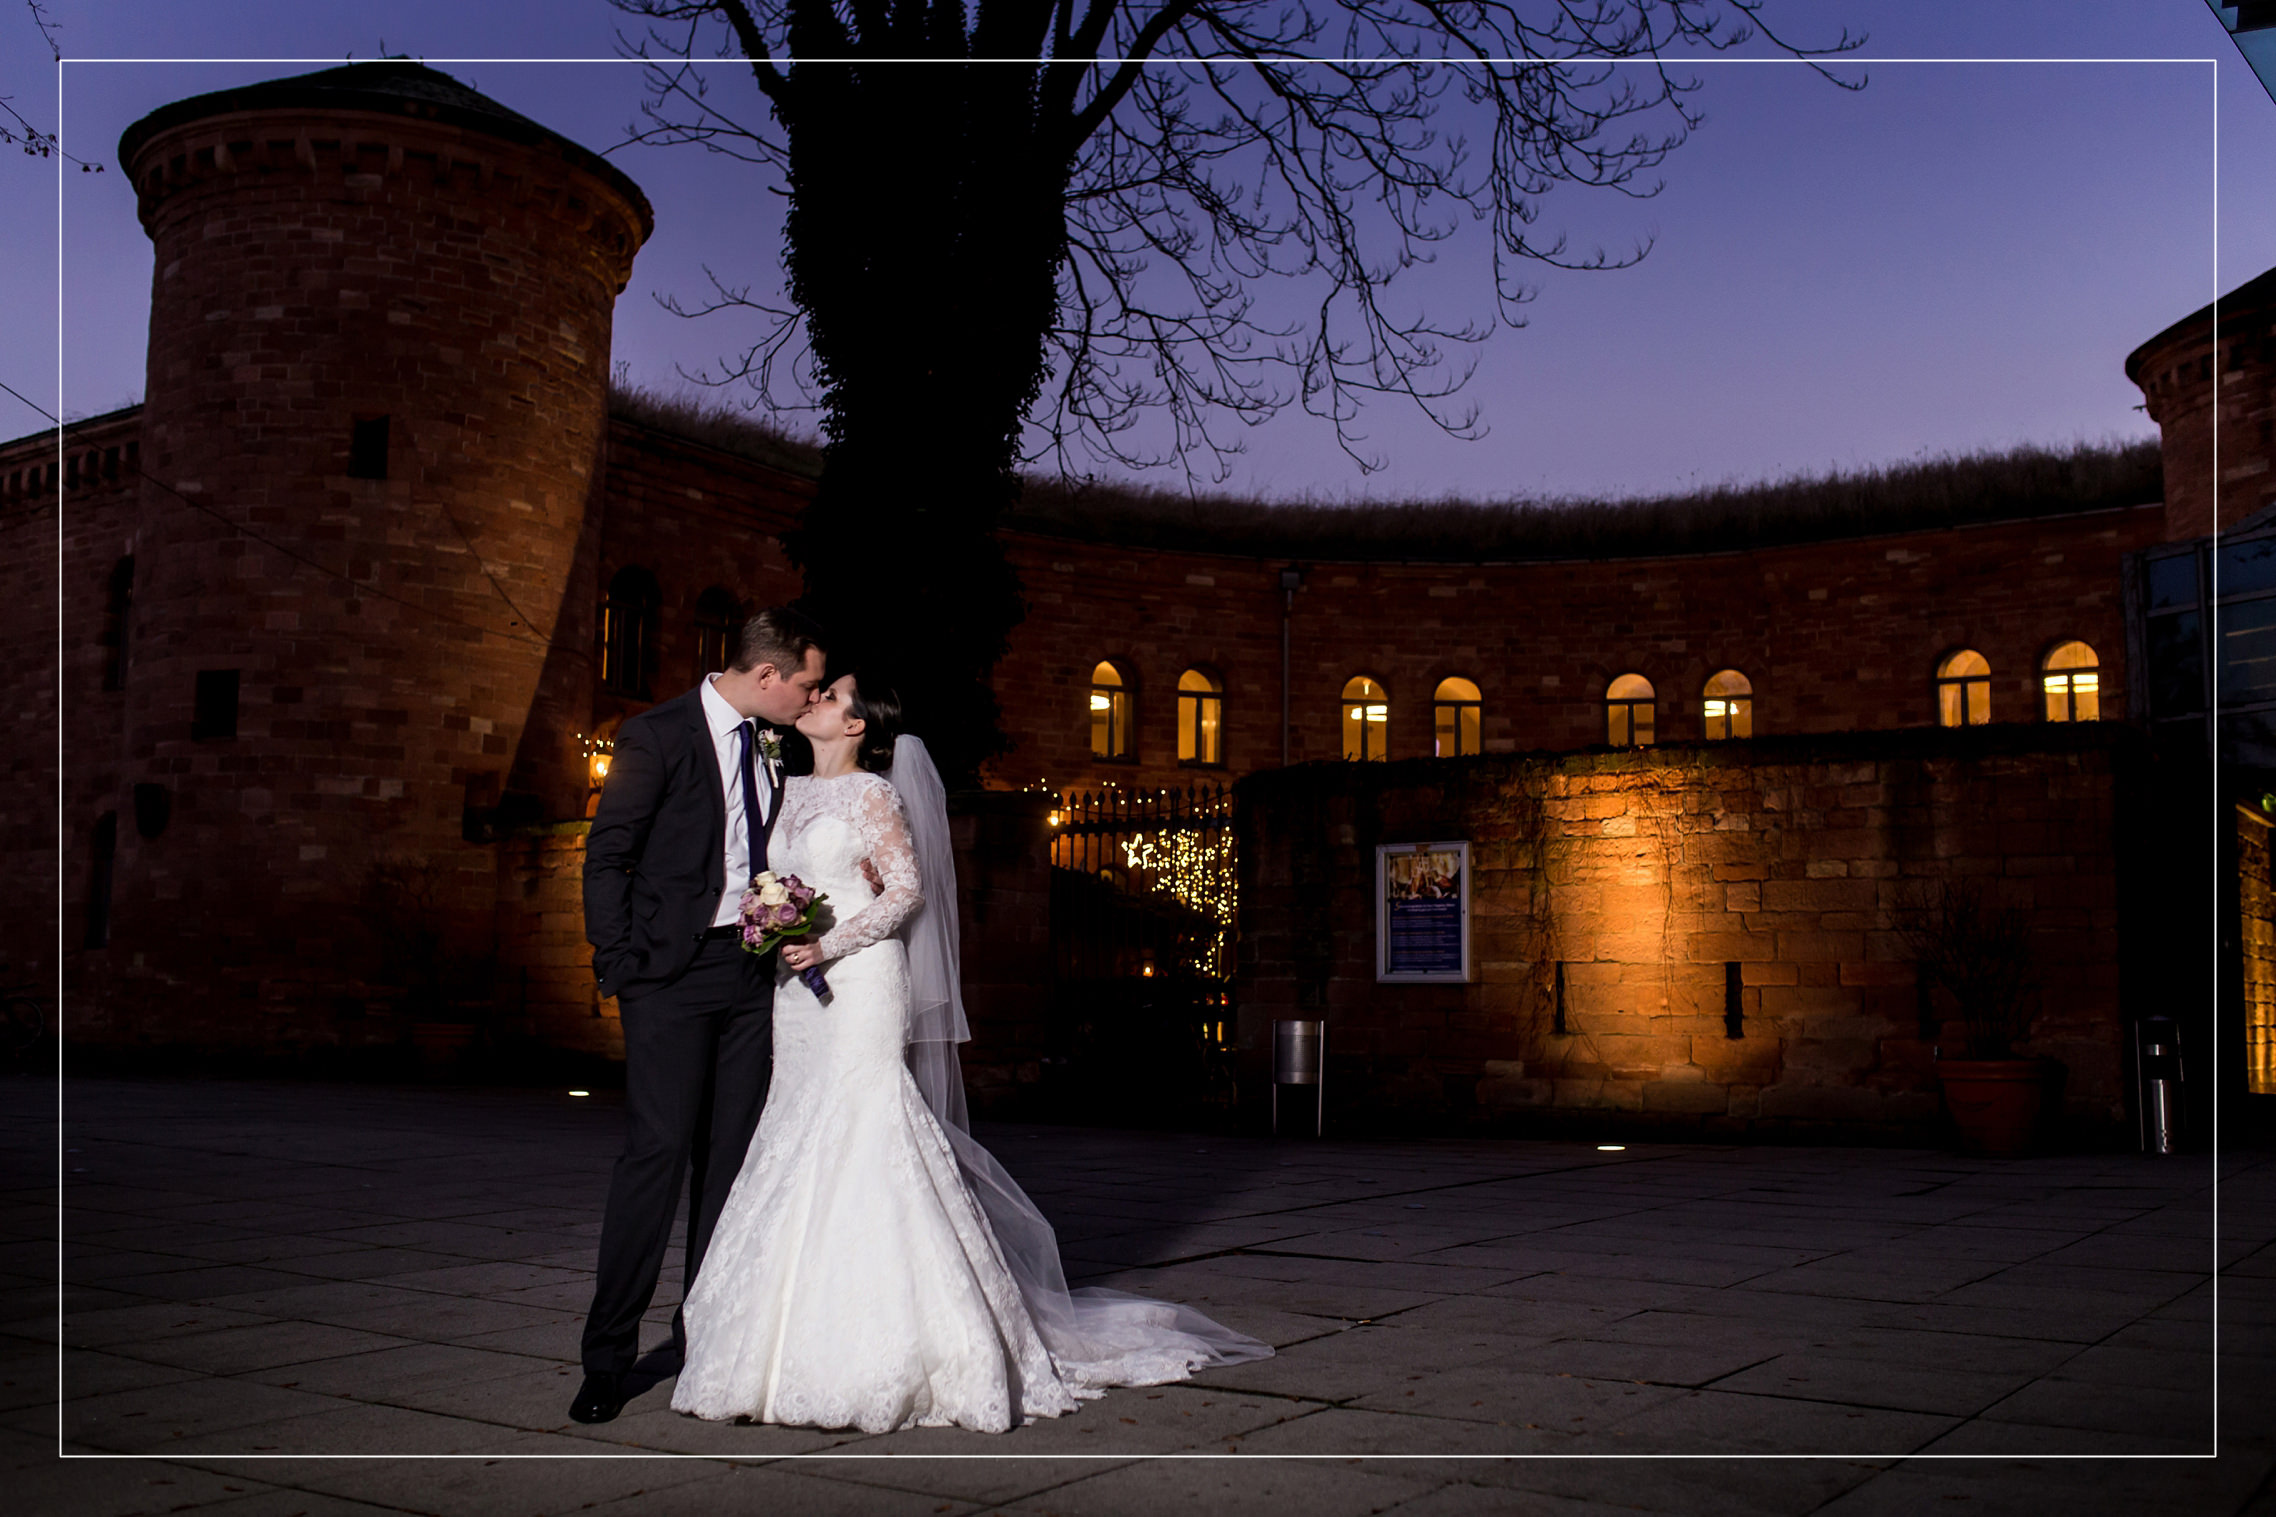 Hochzeitsreportage aus dem Hyatt Regency Hotel in Mainz. Das Brautpaar küsst sich vor einem spektakulären lila Himmel.